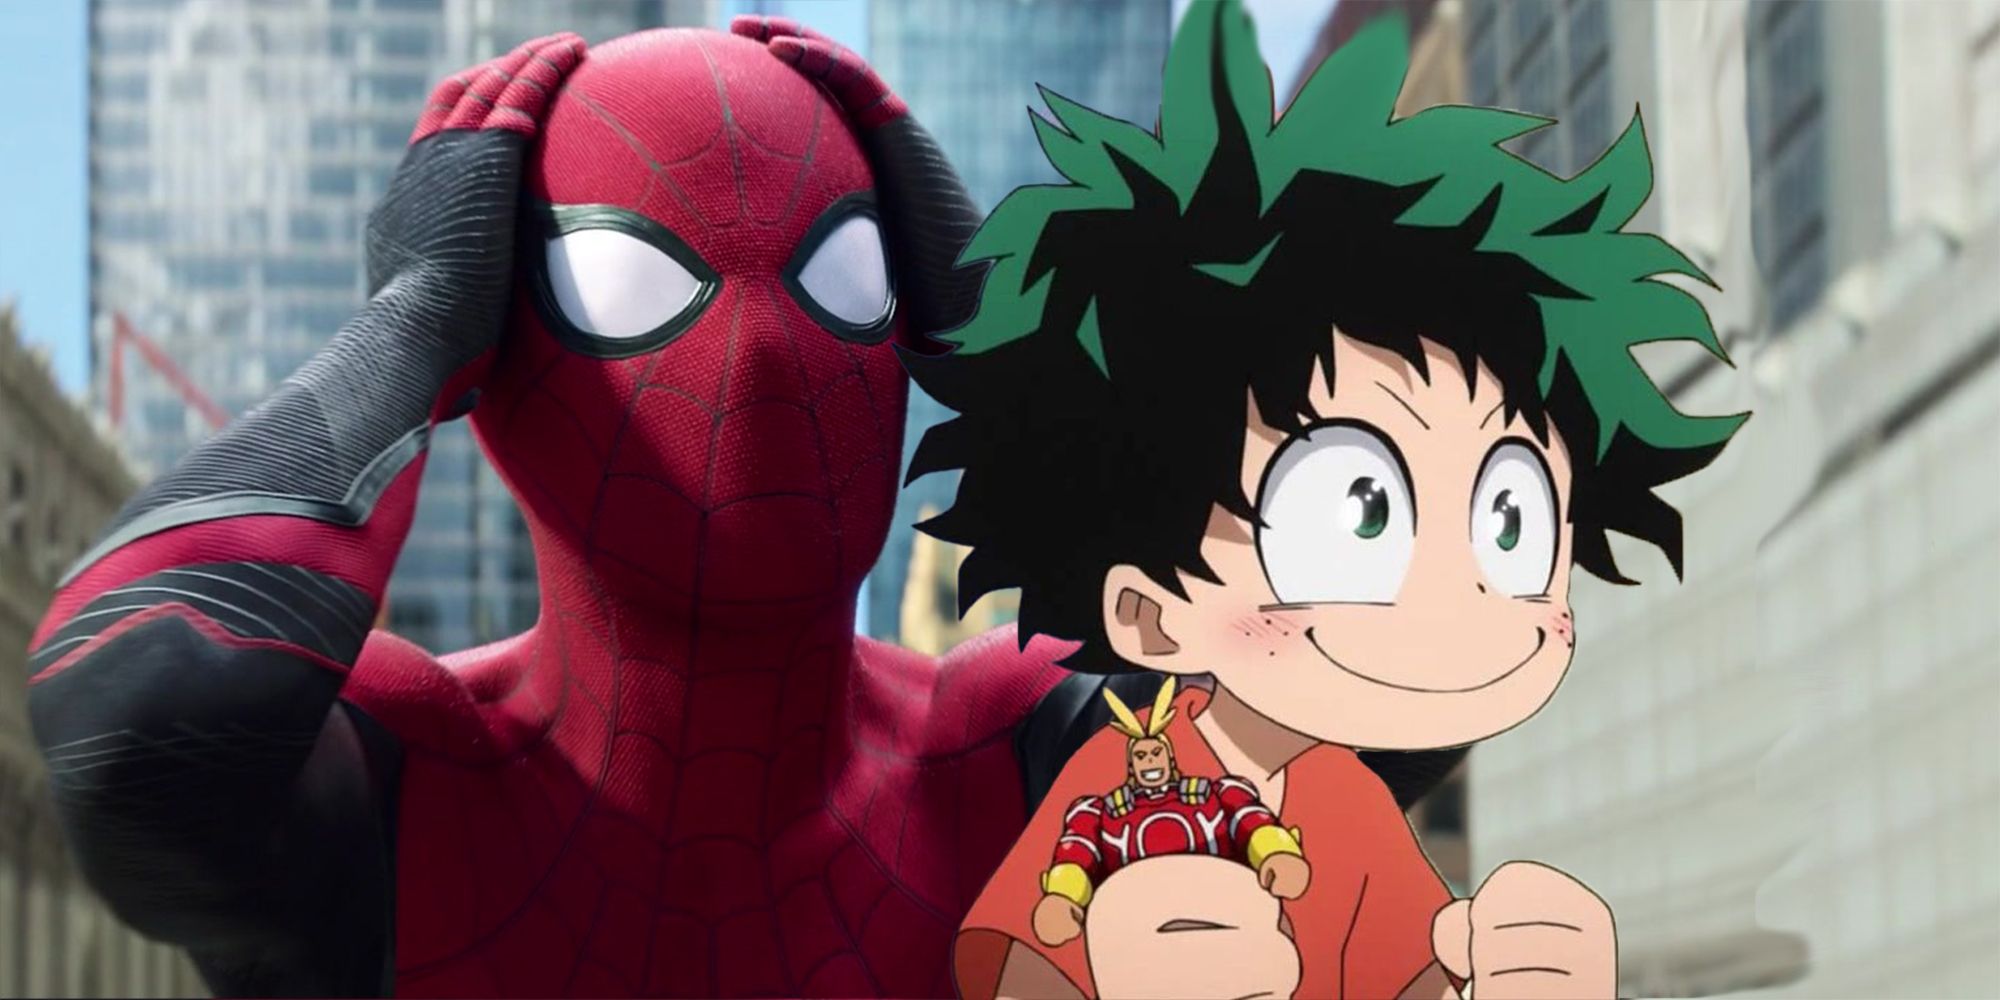 Spider-Man vs Izuku Midoriya une a MHA y Marvel Fandom en un Fanart asombroso